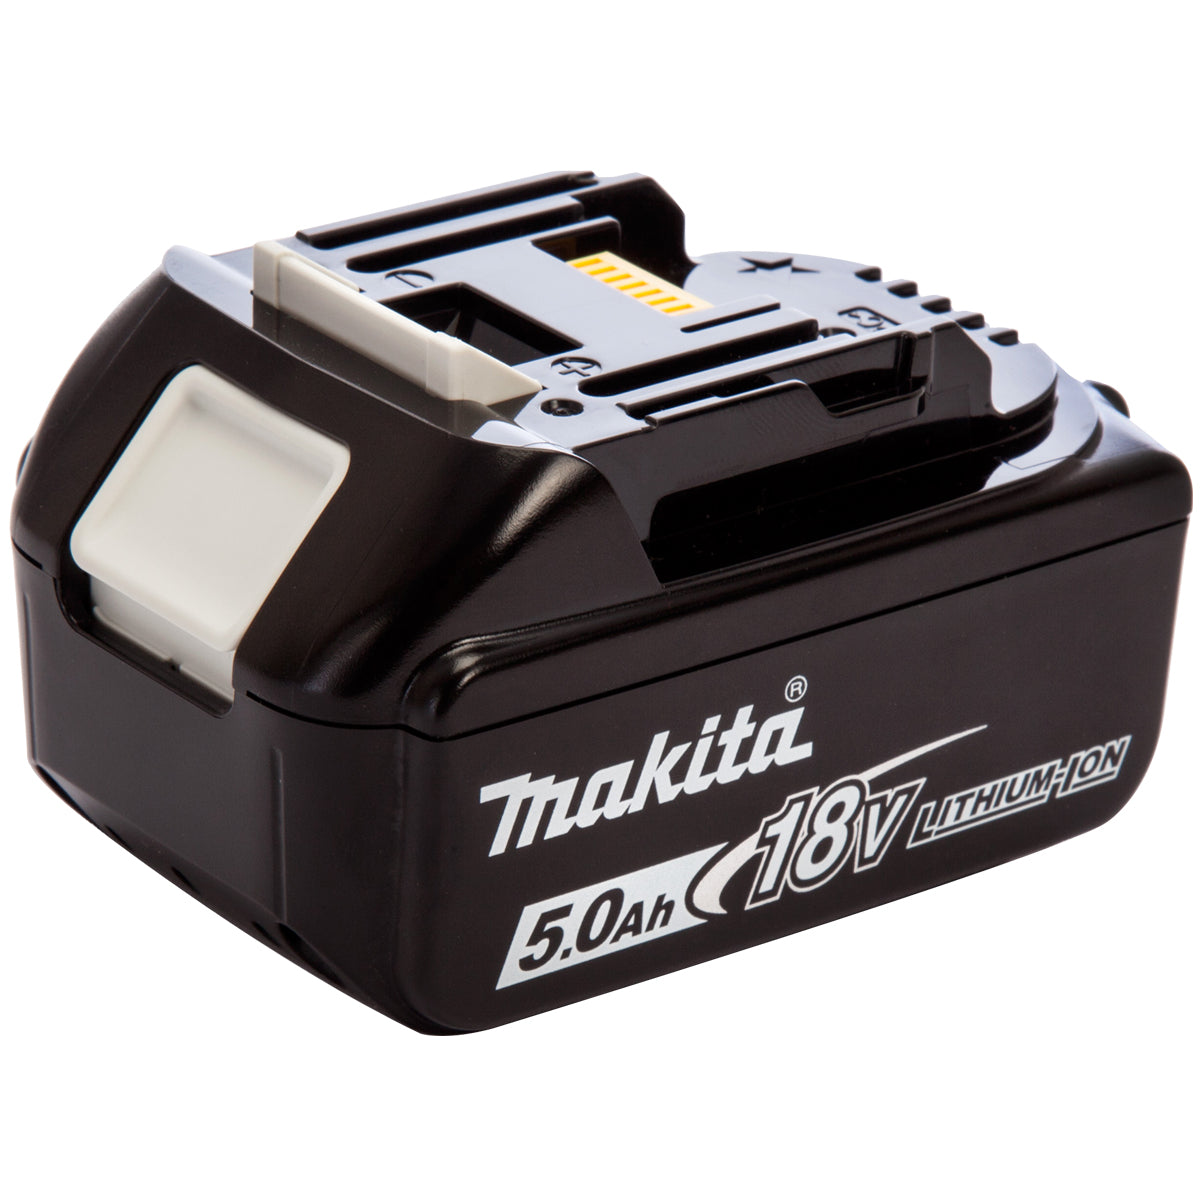 Makita 10 Piece Kit 18V Li-ion 4 x 5.0Ah Batteries MAKDEAL 54M